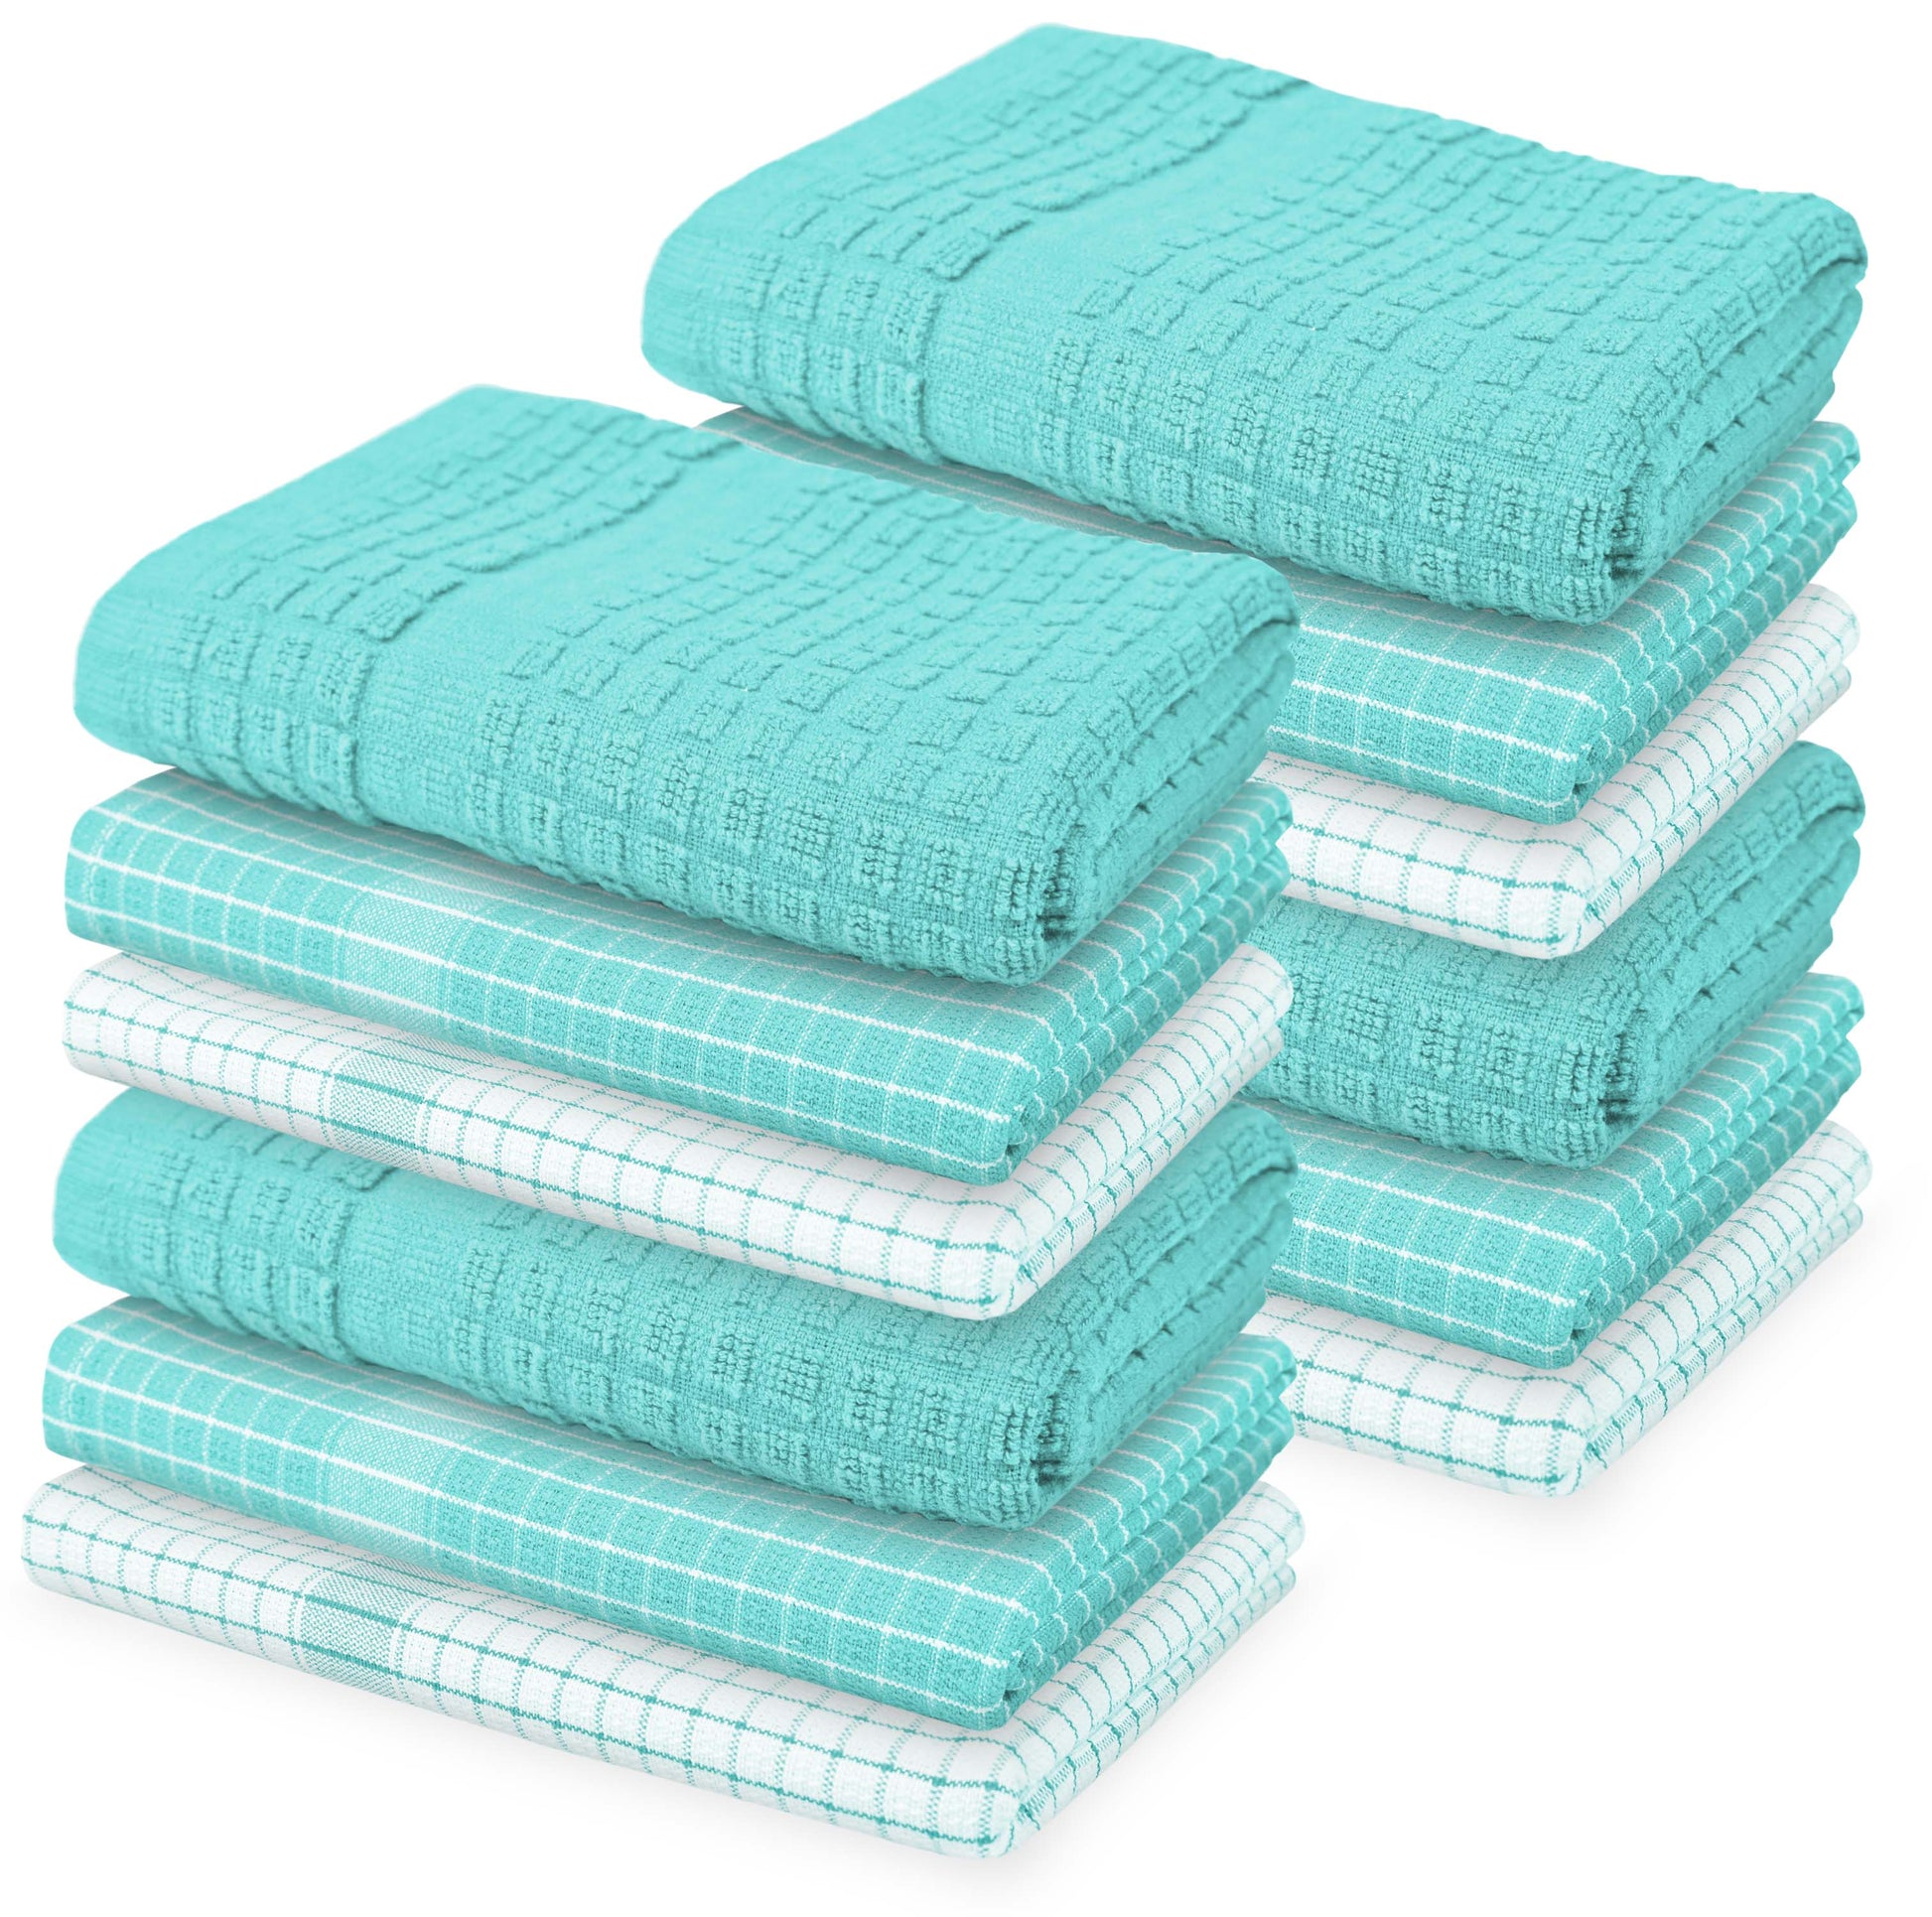 12 PC KITCHEN TOWEL SET: 4 HAND TOWEL & 8 DISH CLOTH-Kitchen Tea Towel-Weave Essentials-Aqua Blue-Weave Essentials